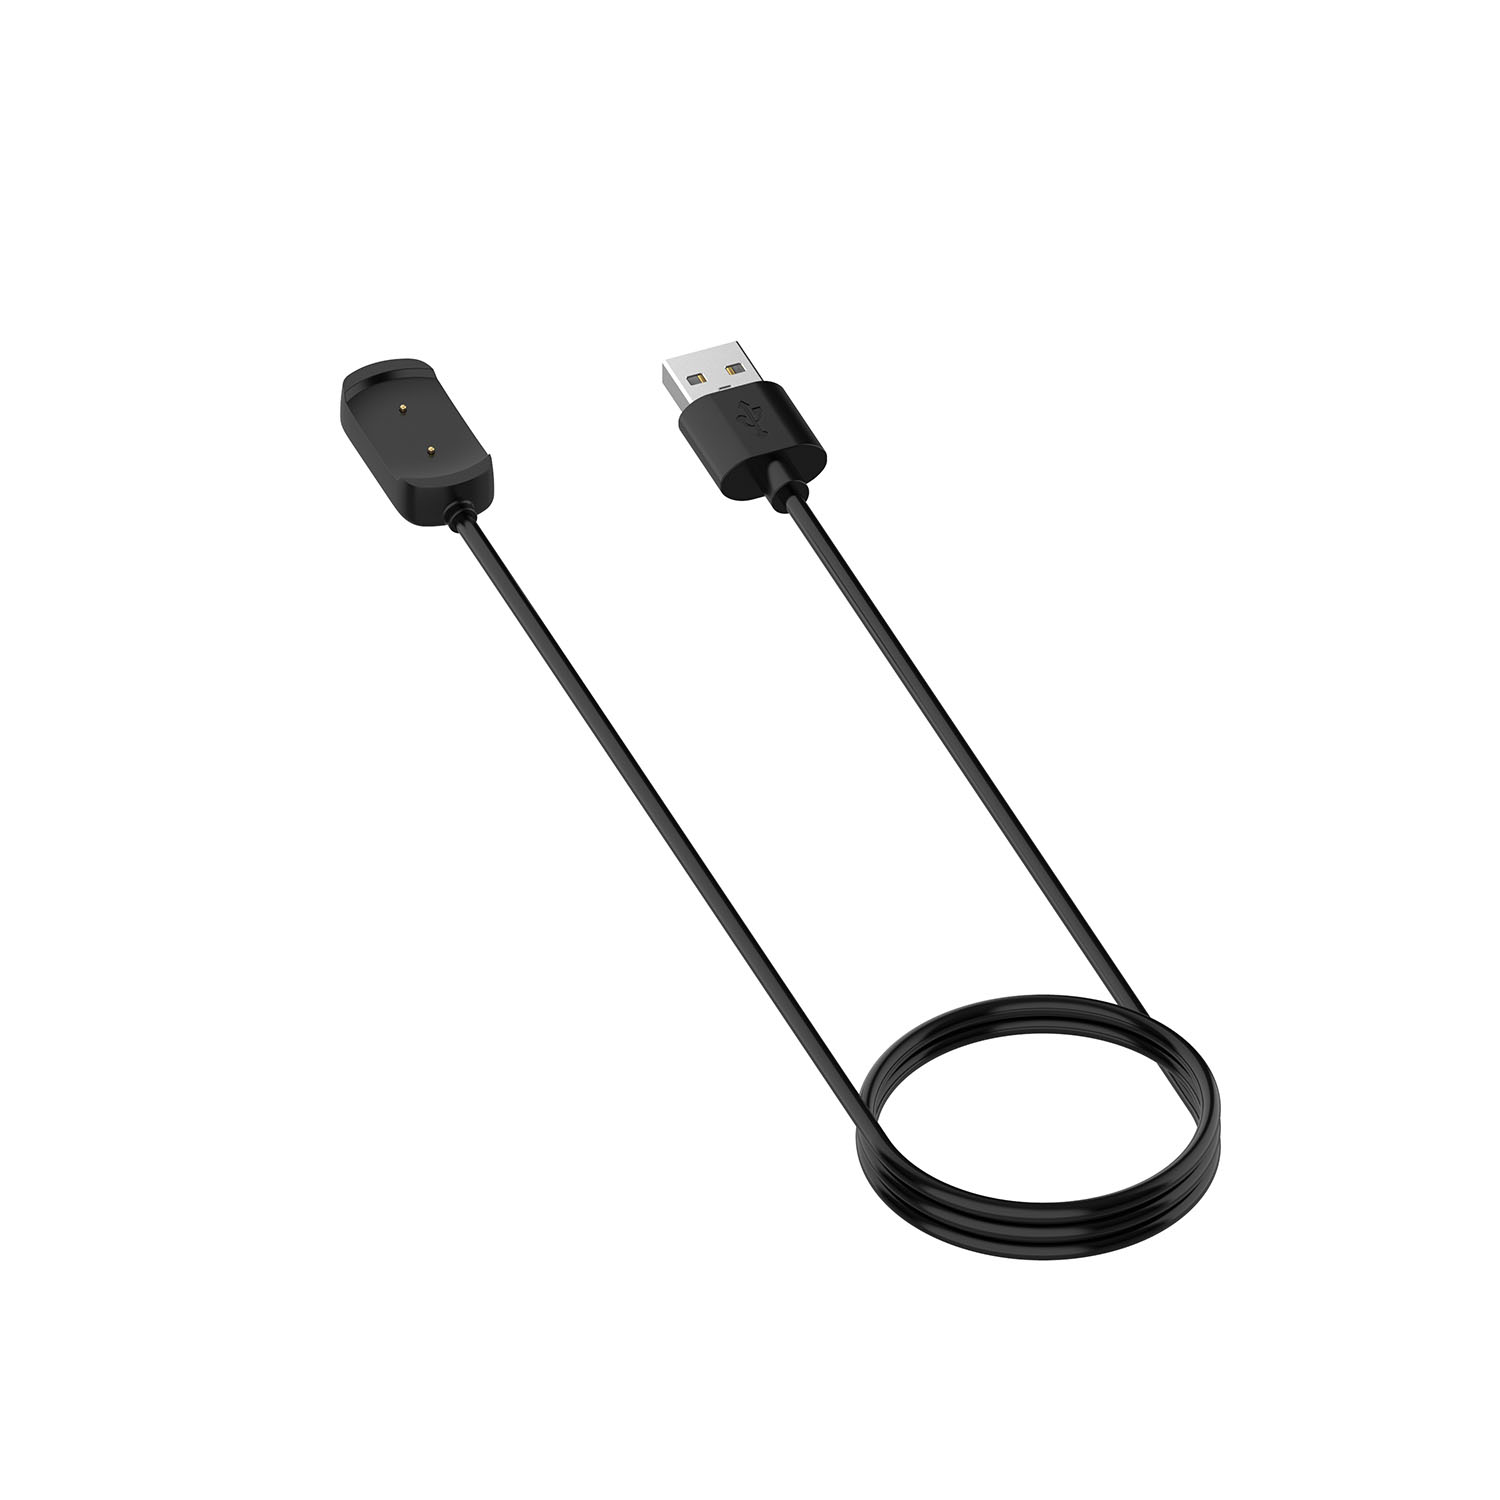 Cáp sạc USB dài 1m cho đồng hồ thông minh Xiaomi Huami Amazfit Gtr 2 / Gts 2 / Amazfit Bip U / Pop